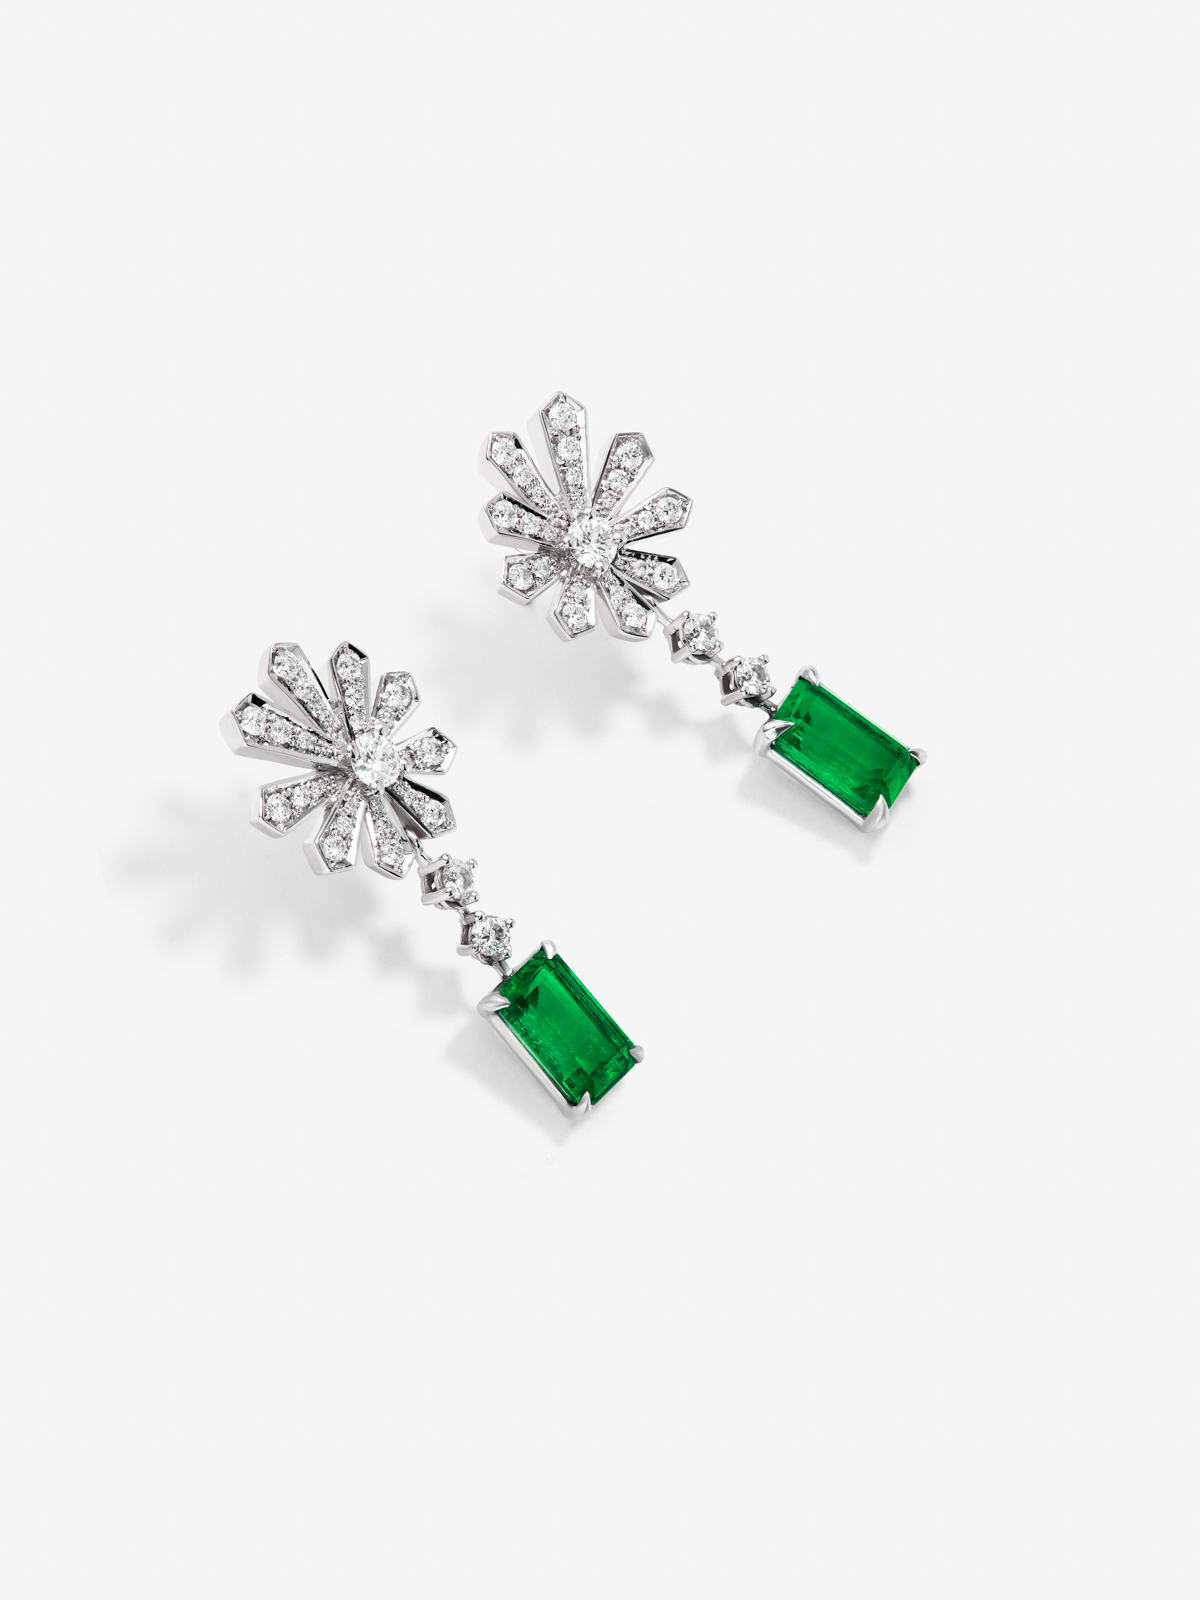 Pendientes de oro blanco de 18K con esmeraldas verdes en talla octogonal de 3,12 cts y diamantes blancos en talla brillante de 0,9 cts